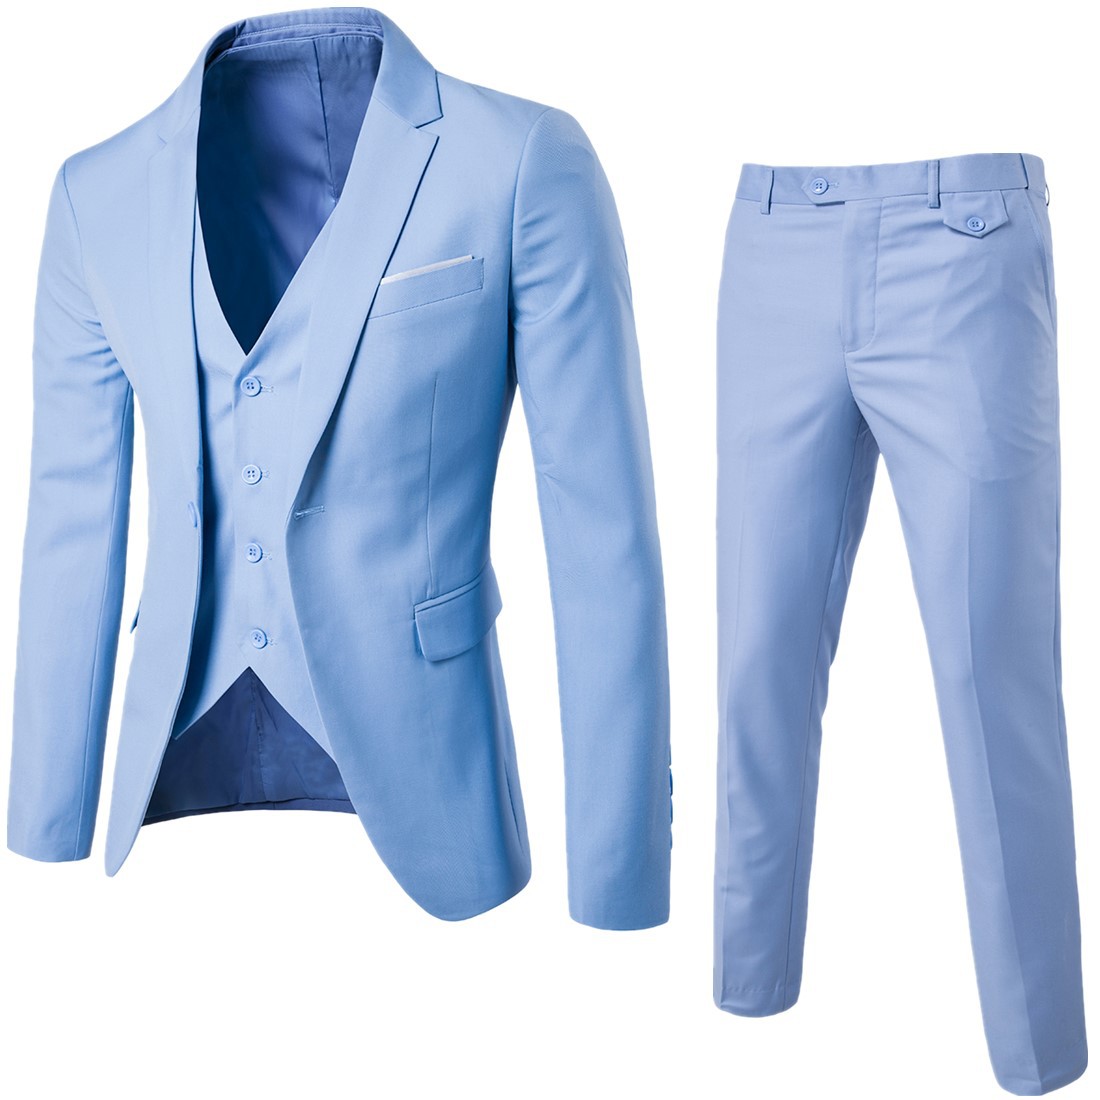 Autumn new brand cut standard suit suit men's suit dress wedding professional dress best man two piece work suit